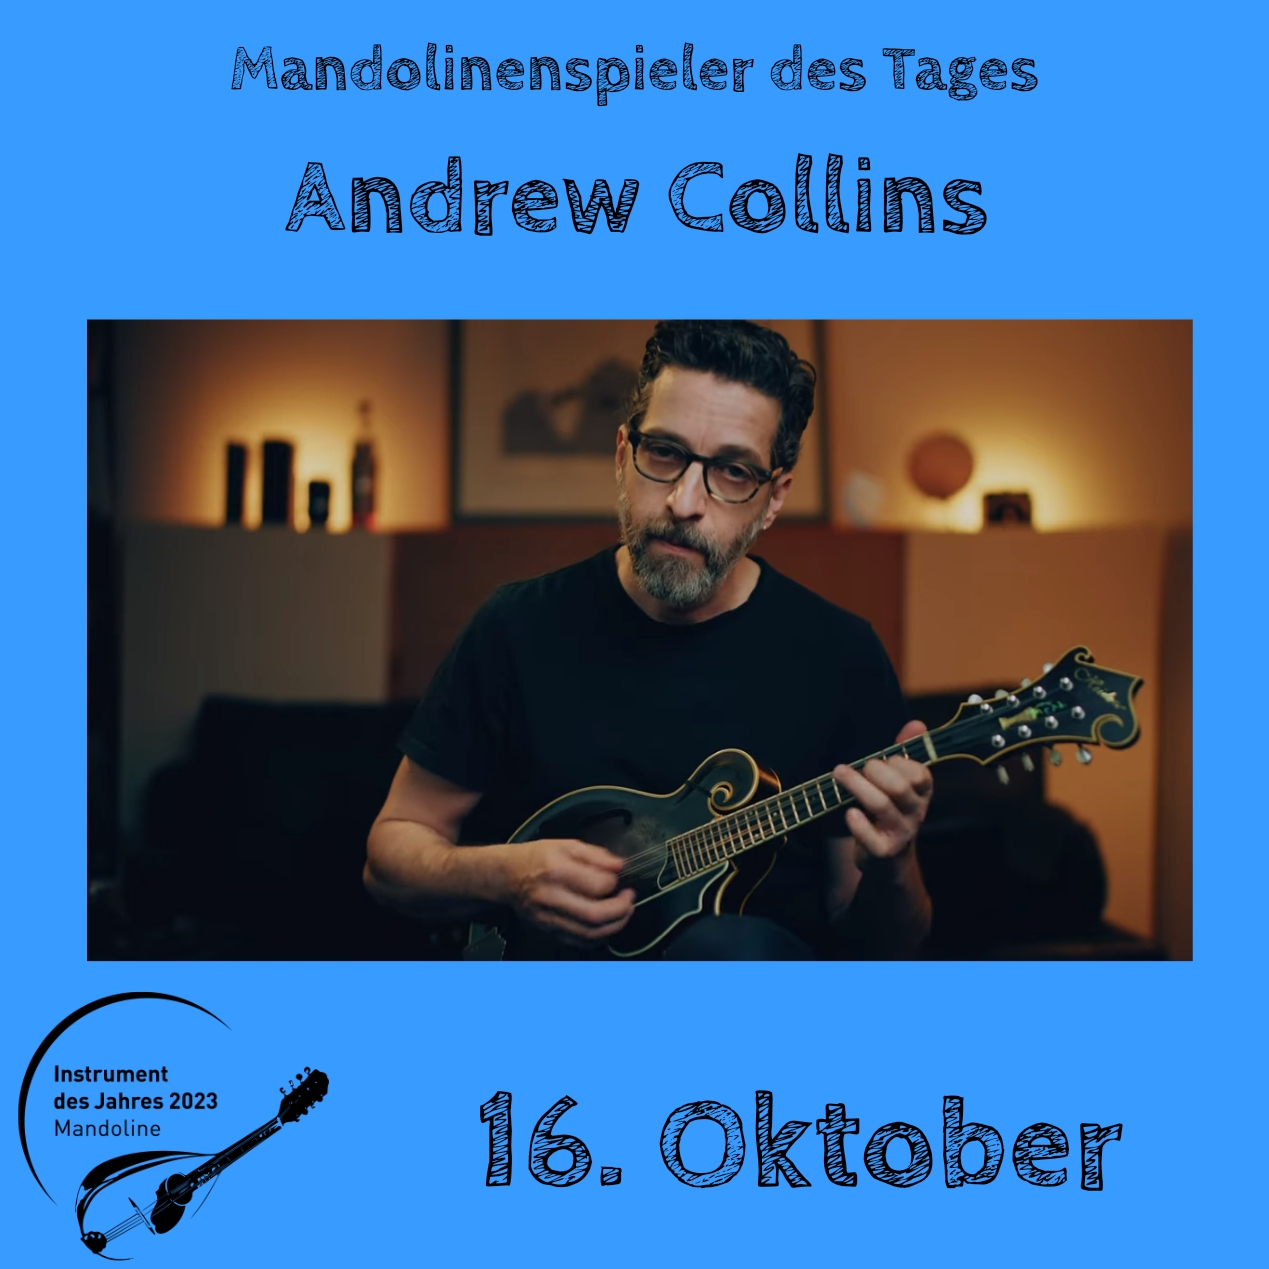 16. Oktober - Andrew Collins Instrument des Jahres 2023 Mandolinenspieler Mandolinenspielerin des Tages